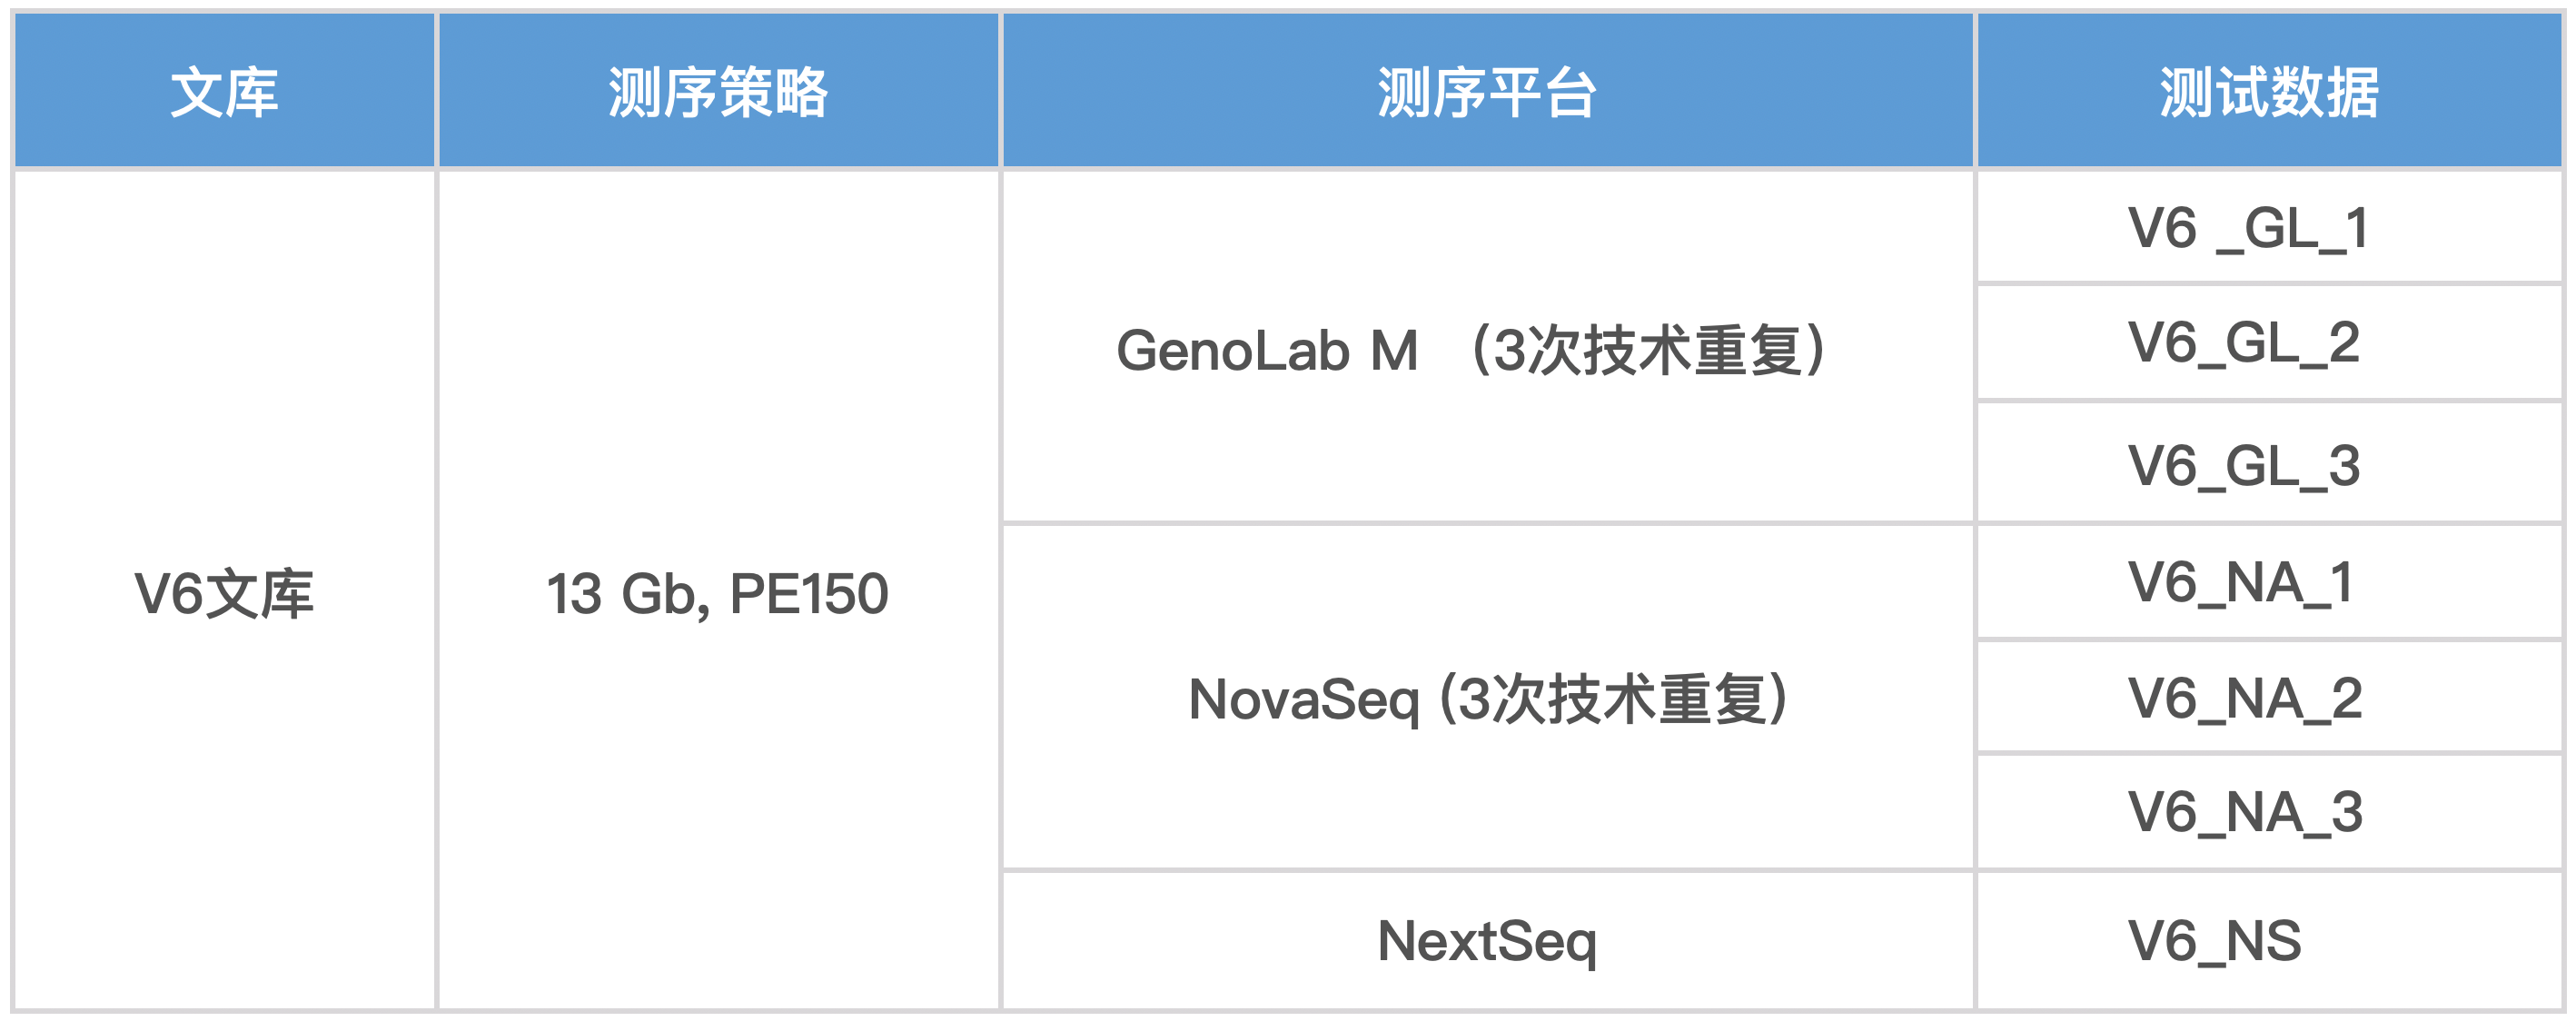 真迈生物GenoLab M PE150 测序试剂盒测评数据发布